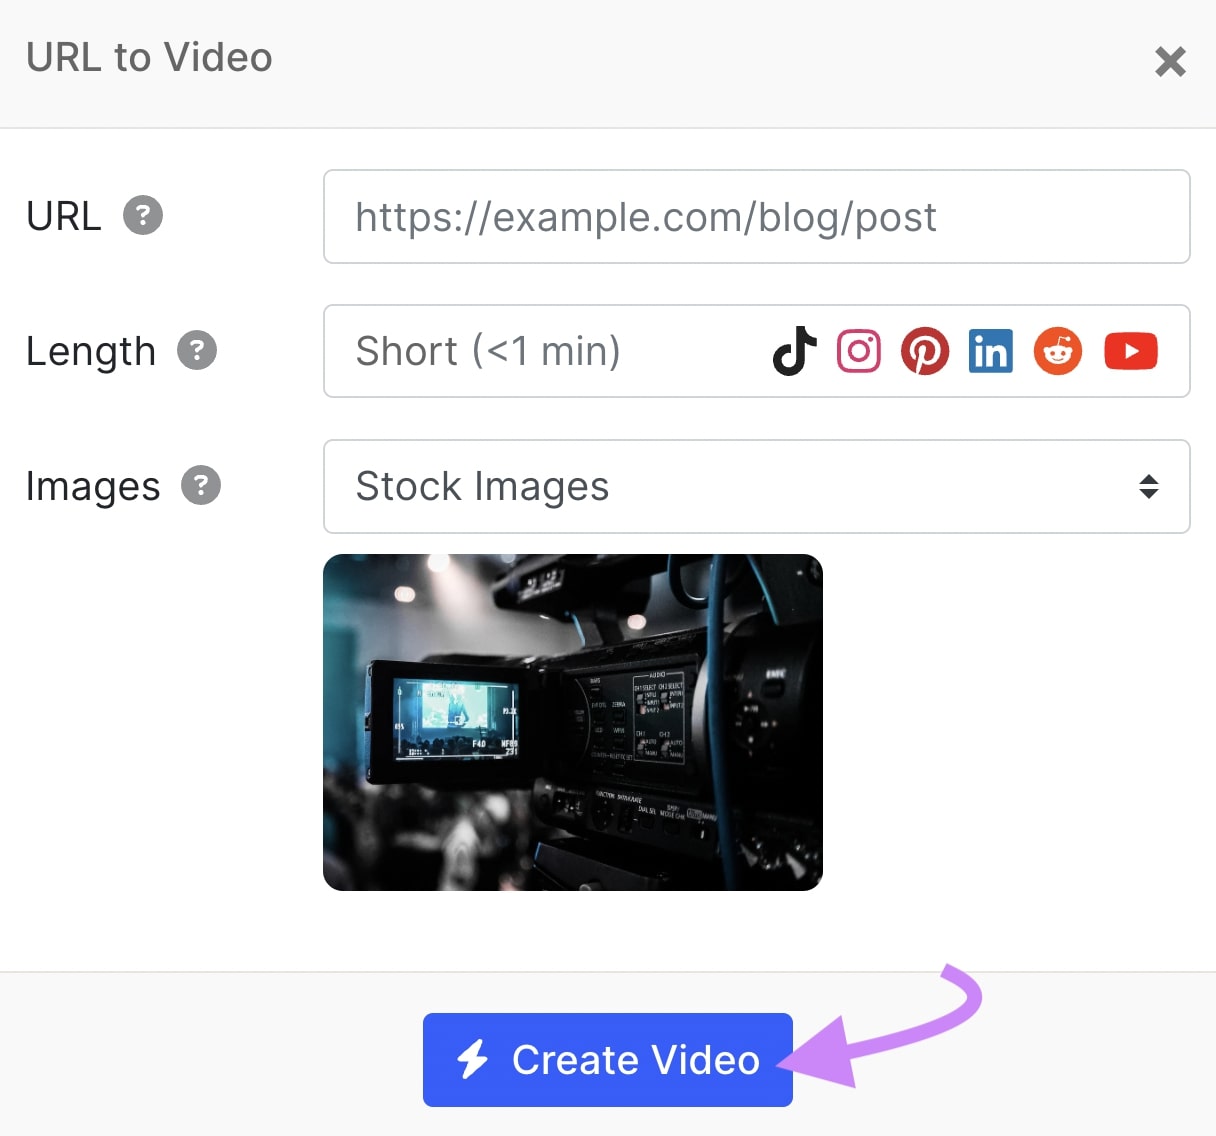 "URL to Video" pop-up window in Instant Video Creator